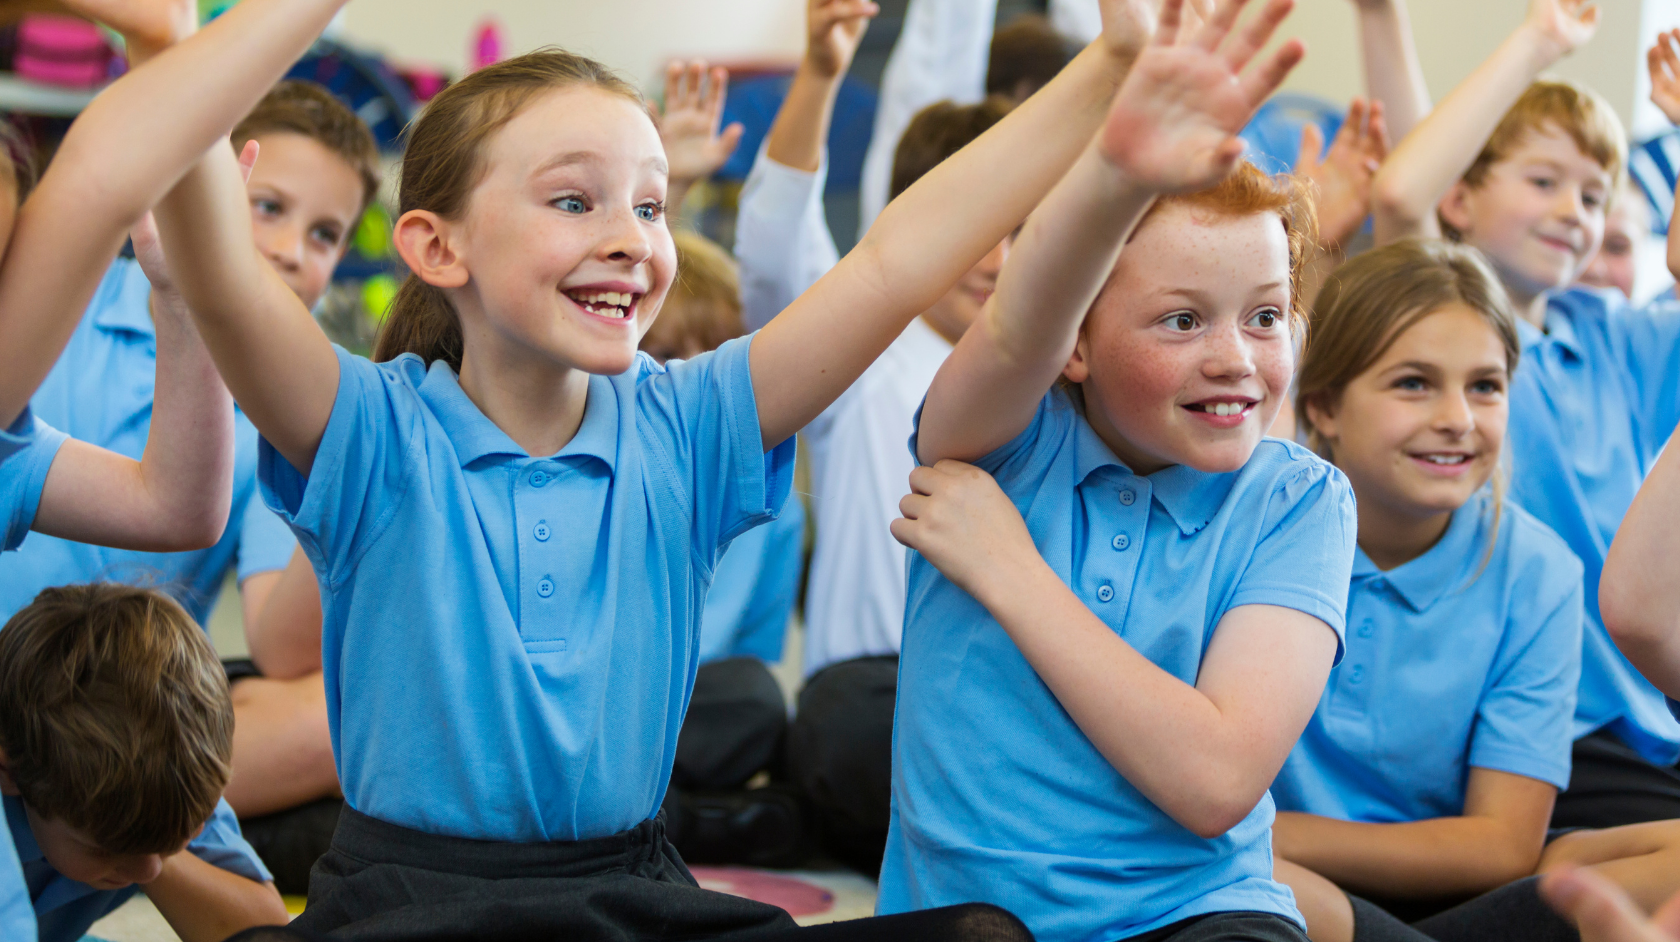 Primary school children raising hands